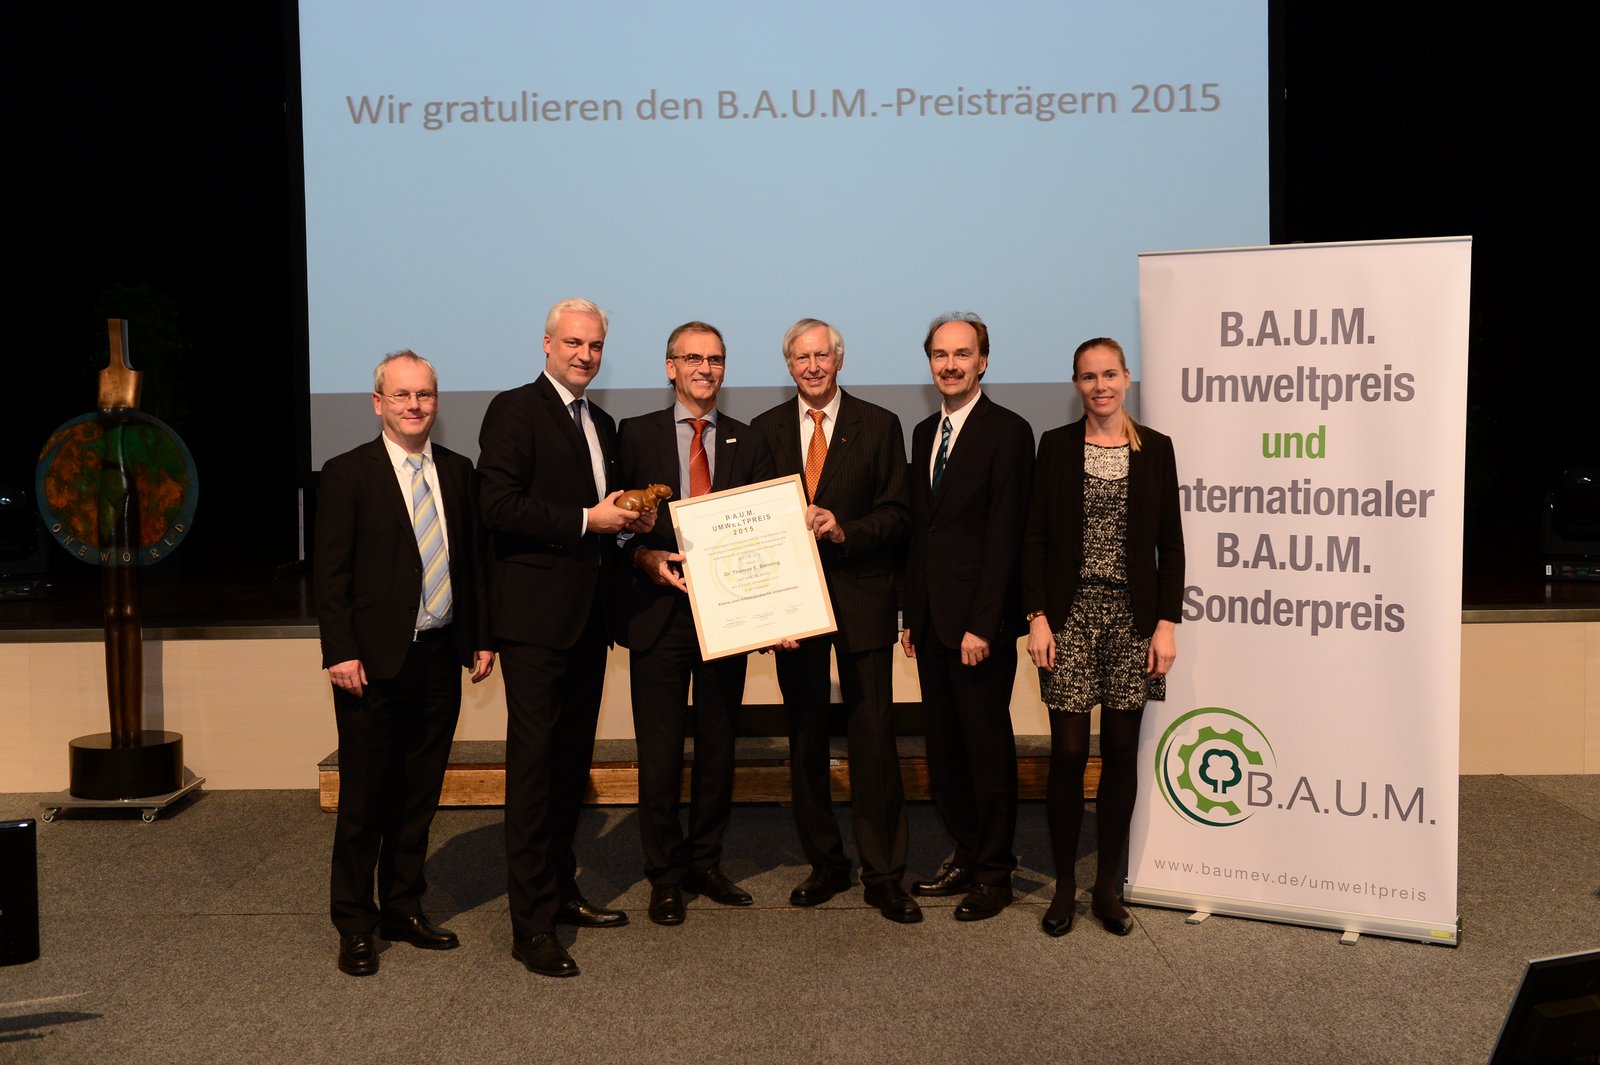 NRW-Wirtschaftsminister Garrelt Duin (2. v.l.) und der B.A.U.M.-Vorstand überreichen den Preis an NATURSTROM-Vorstandschef Dr. Banning (3. v.l.) © B.A.U.M. e. V.